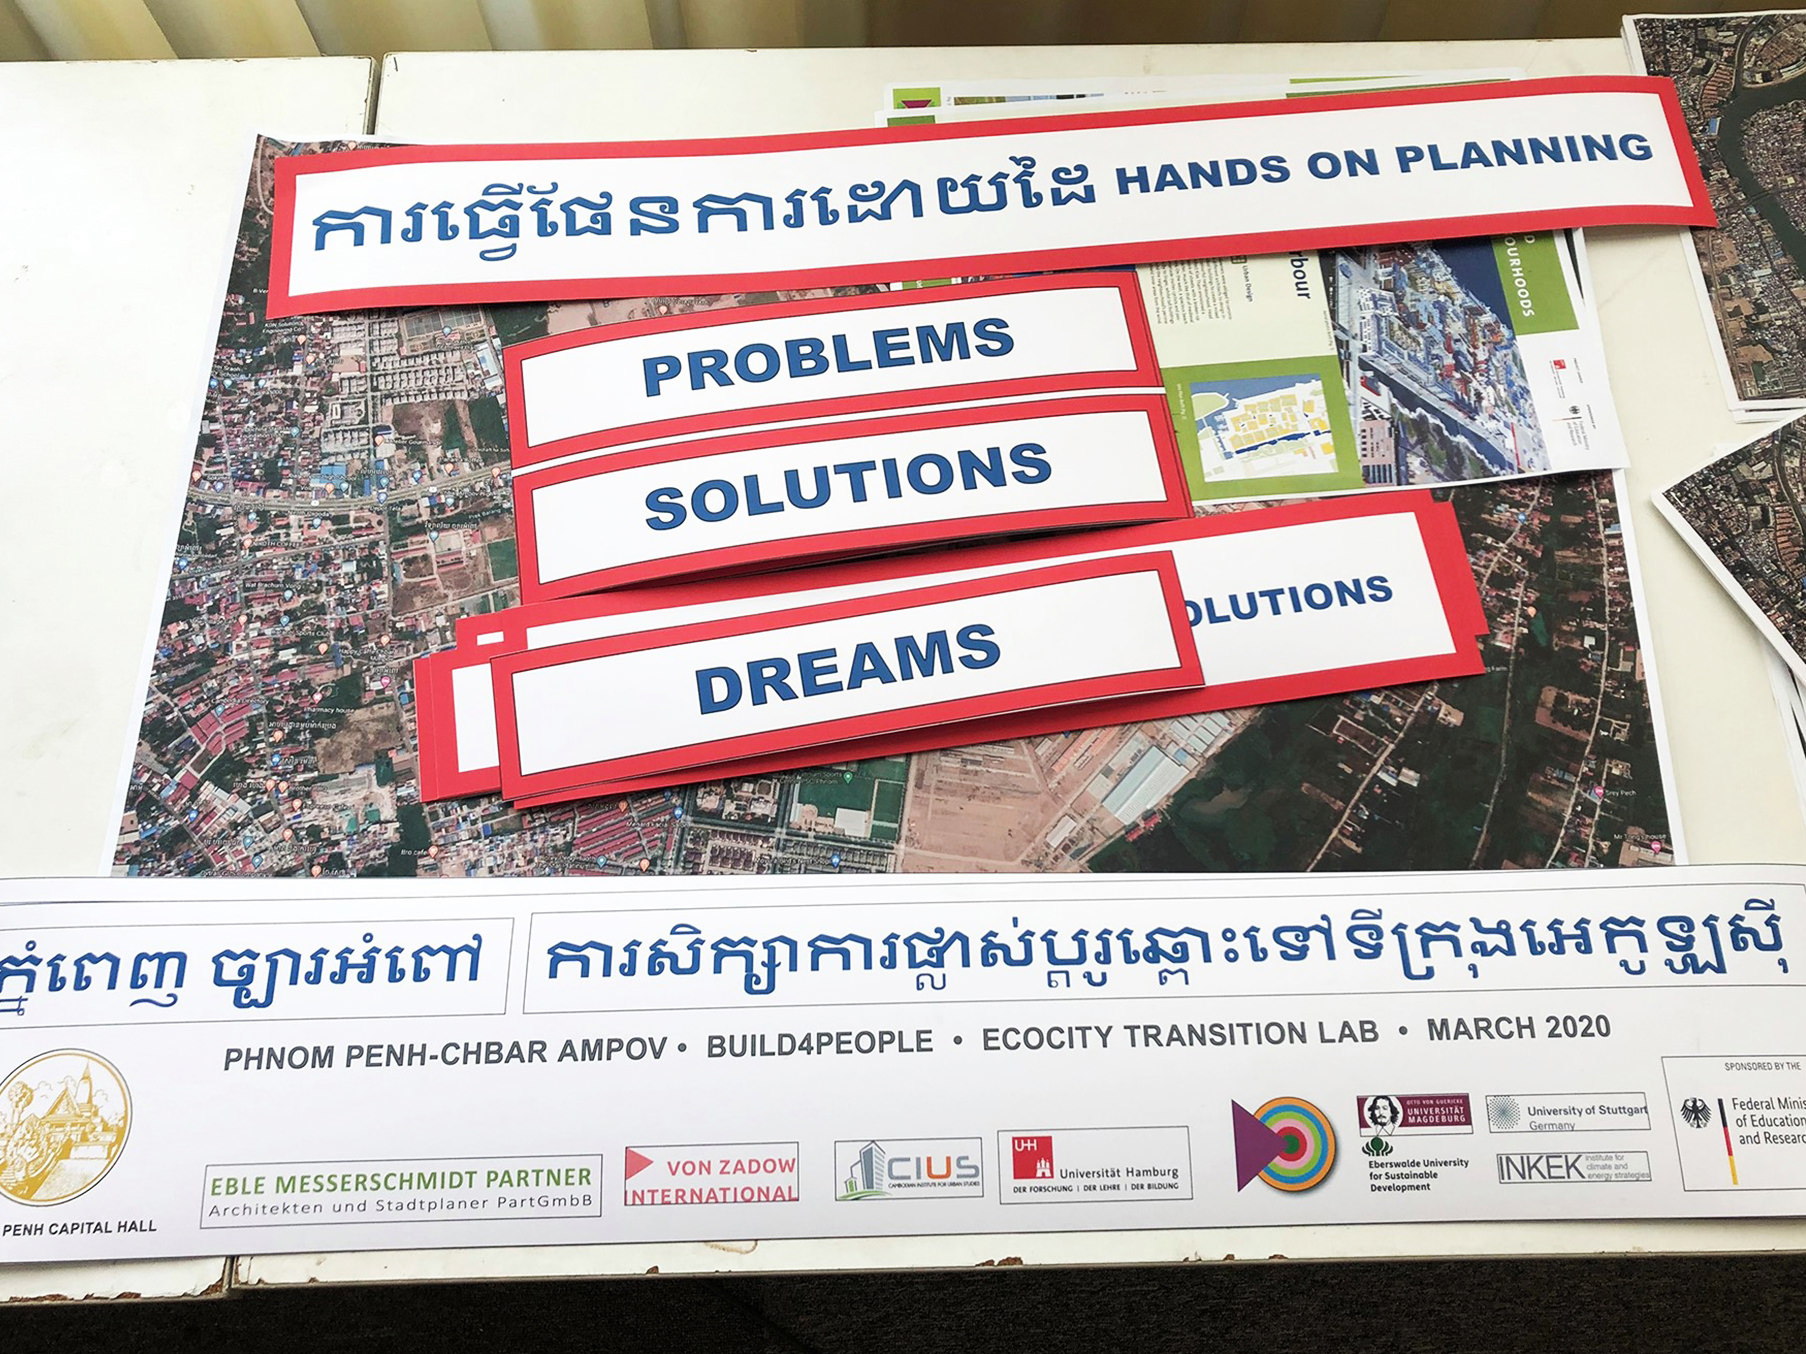 Eindrücke vom Build4People Ecocity Transition Lab im Rathaus von Phnom Penh, März 2020